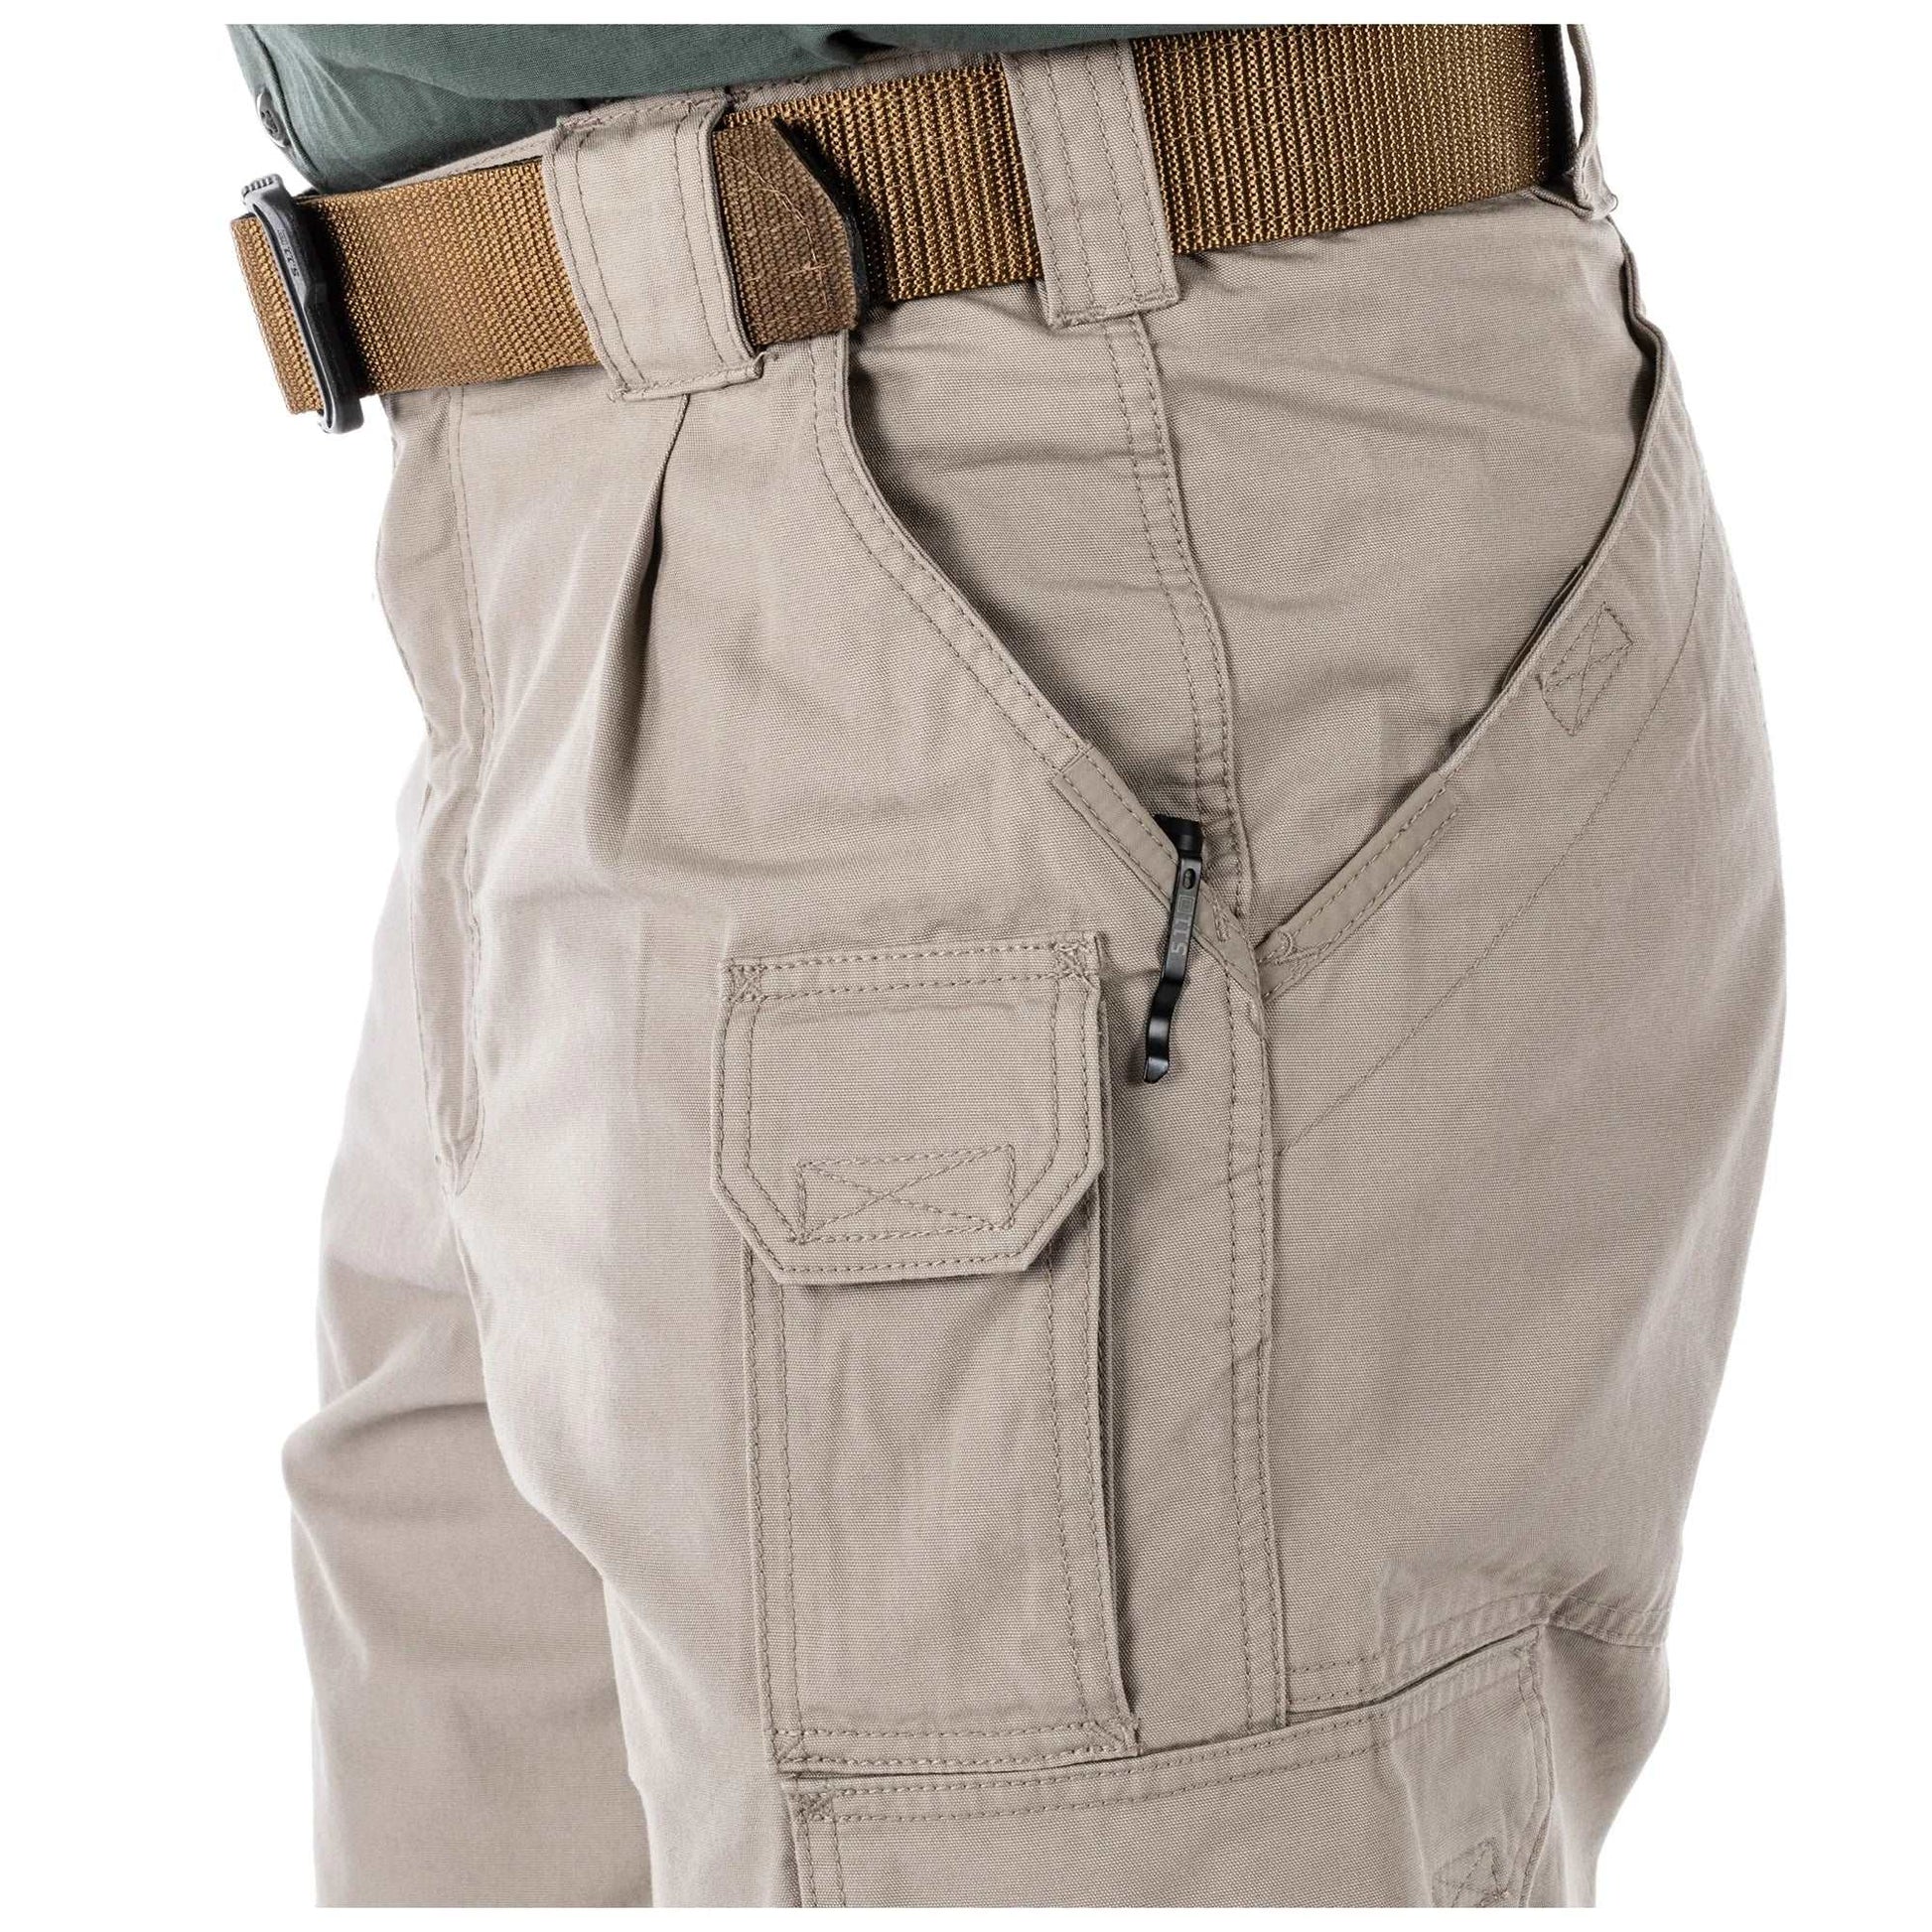 Pants - 5.11 Tactical Cotton Canvas Pants - Khaki